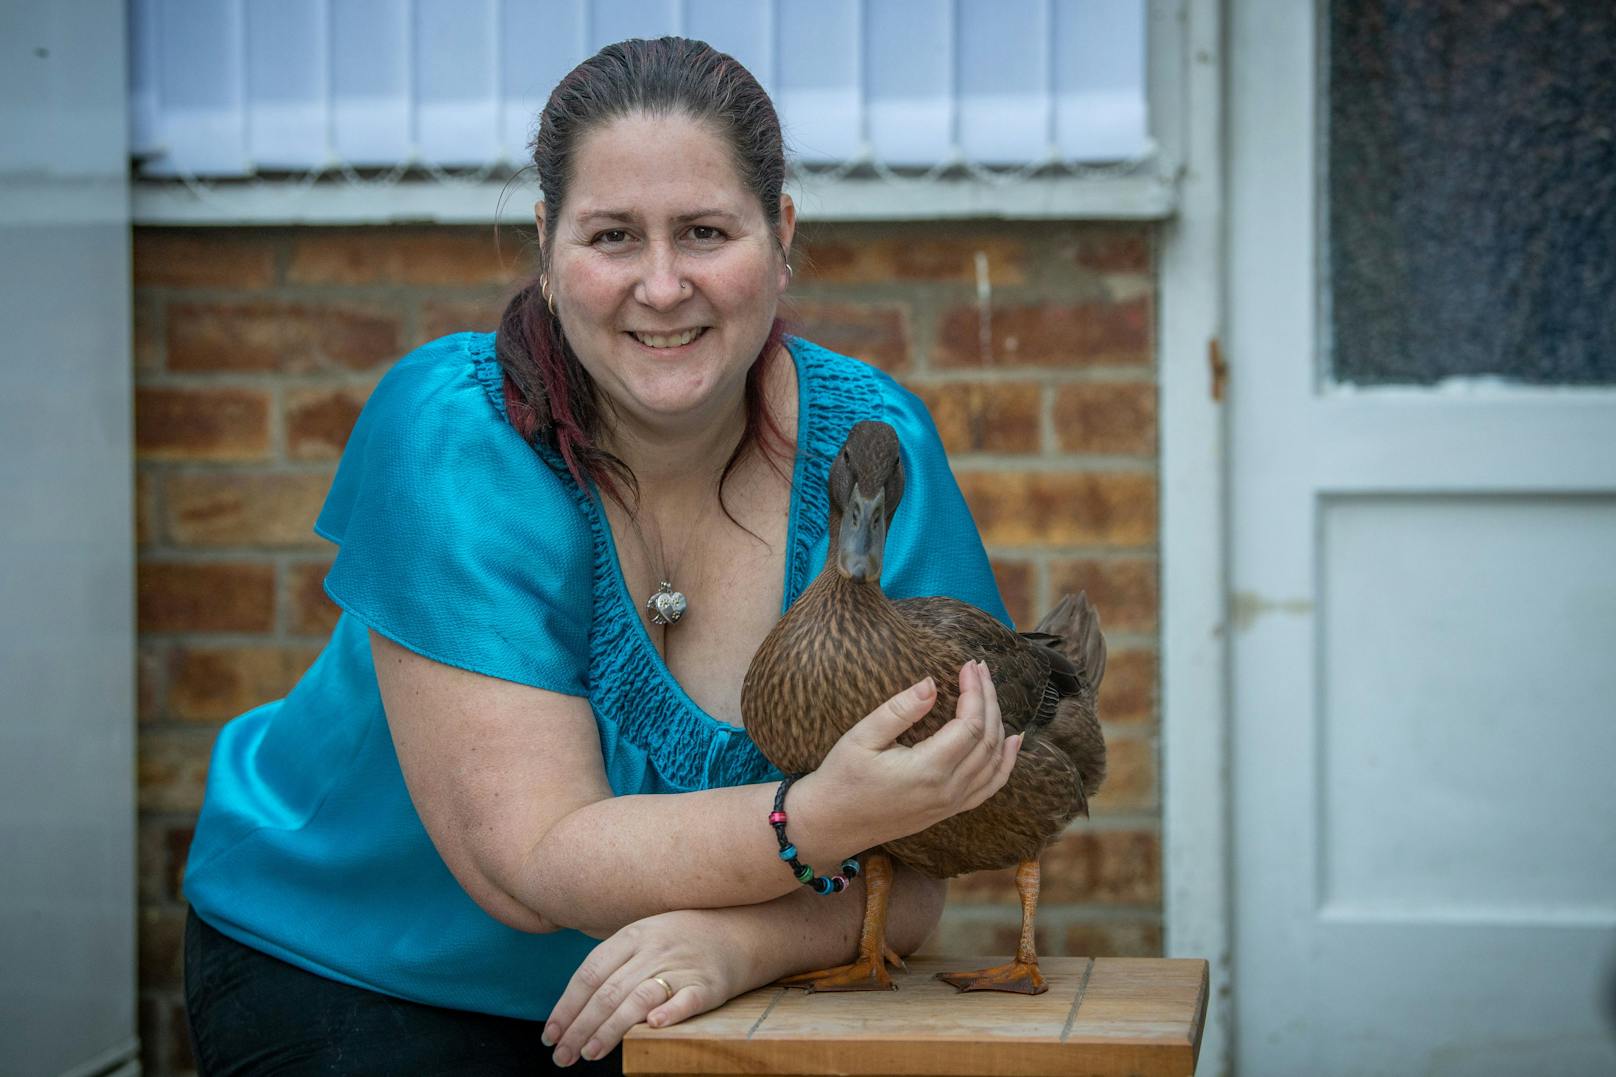 Besitzerin Joe Nutkins (41) ist sehr stolz auf ihre liebenswerte Ente.